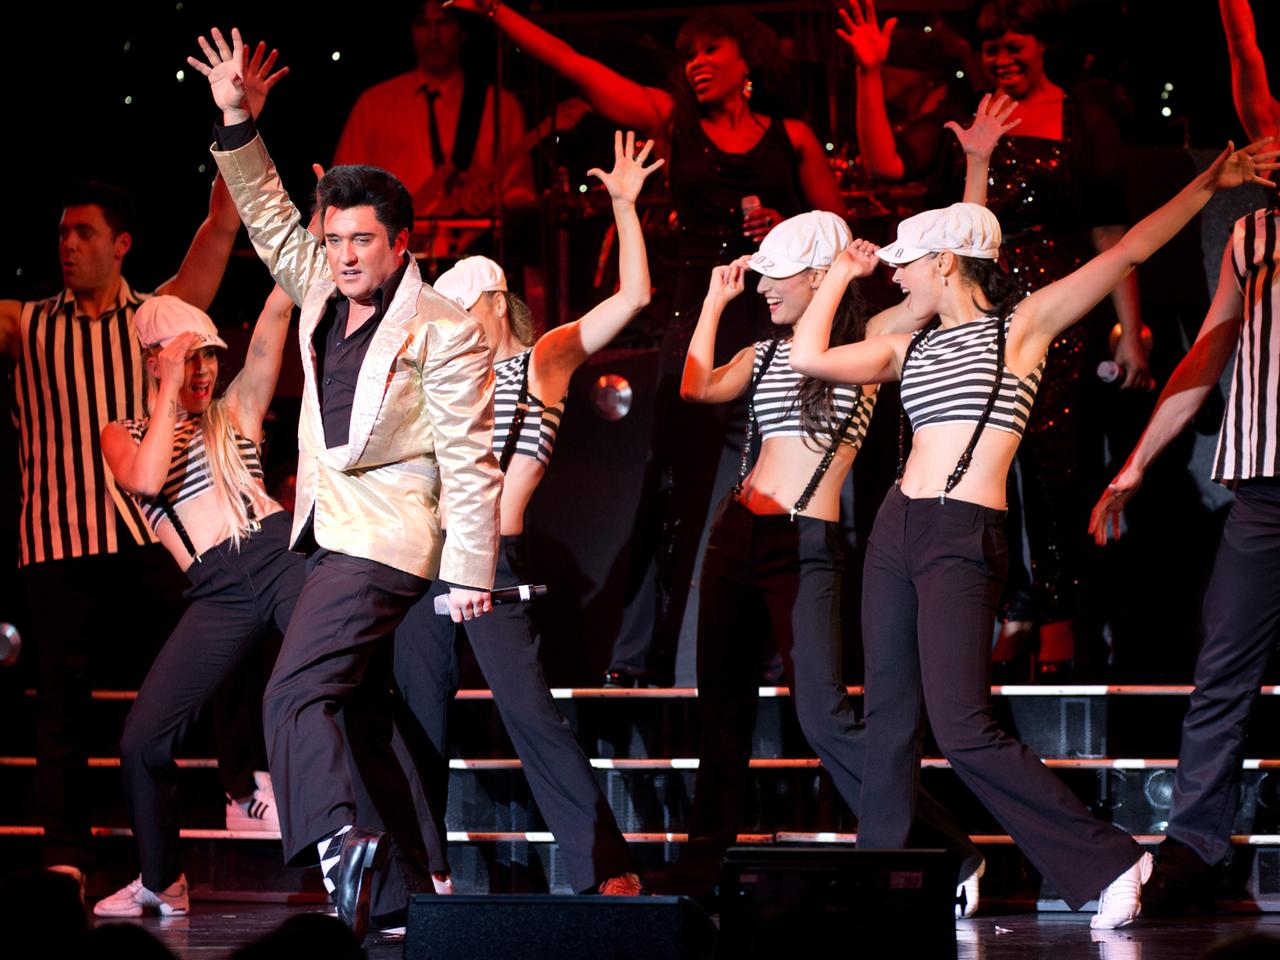 Ein Elvis Presley Double und Tänzer stehen bei der Charity-Gala von "Stars in Concert" am 16.09.2013 im Estrel-Hotel.